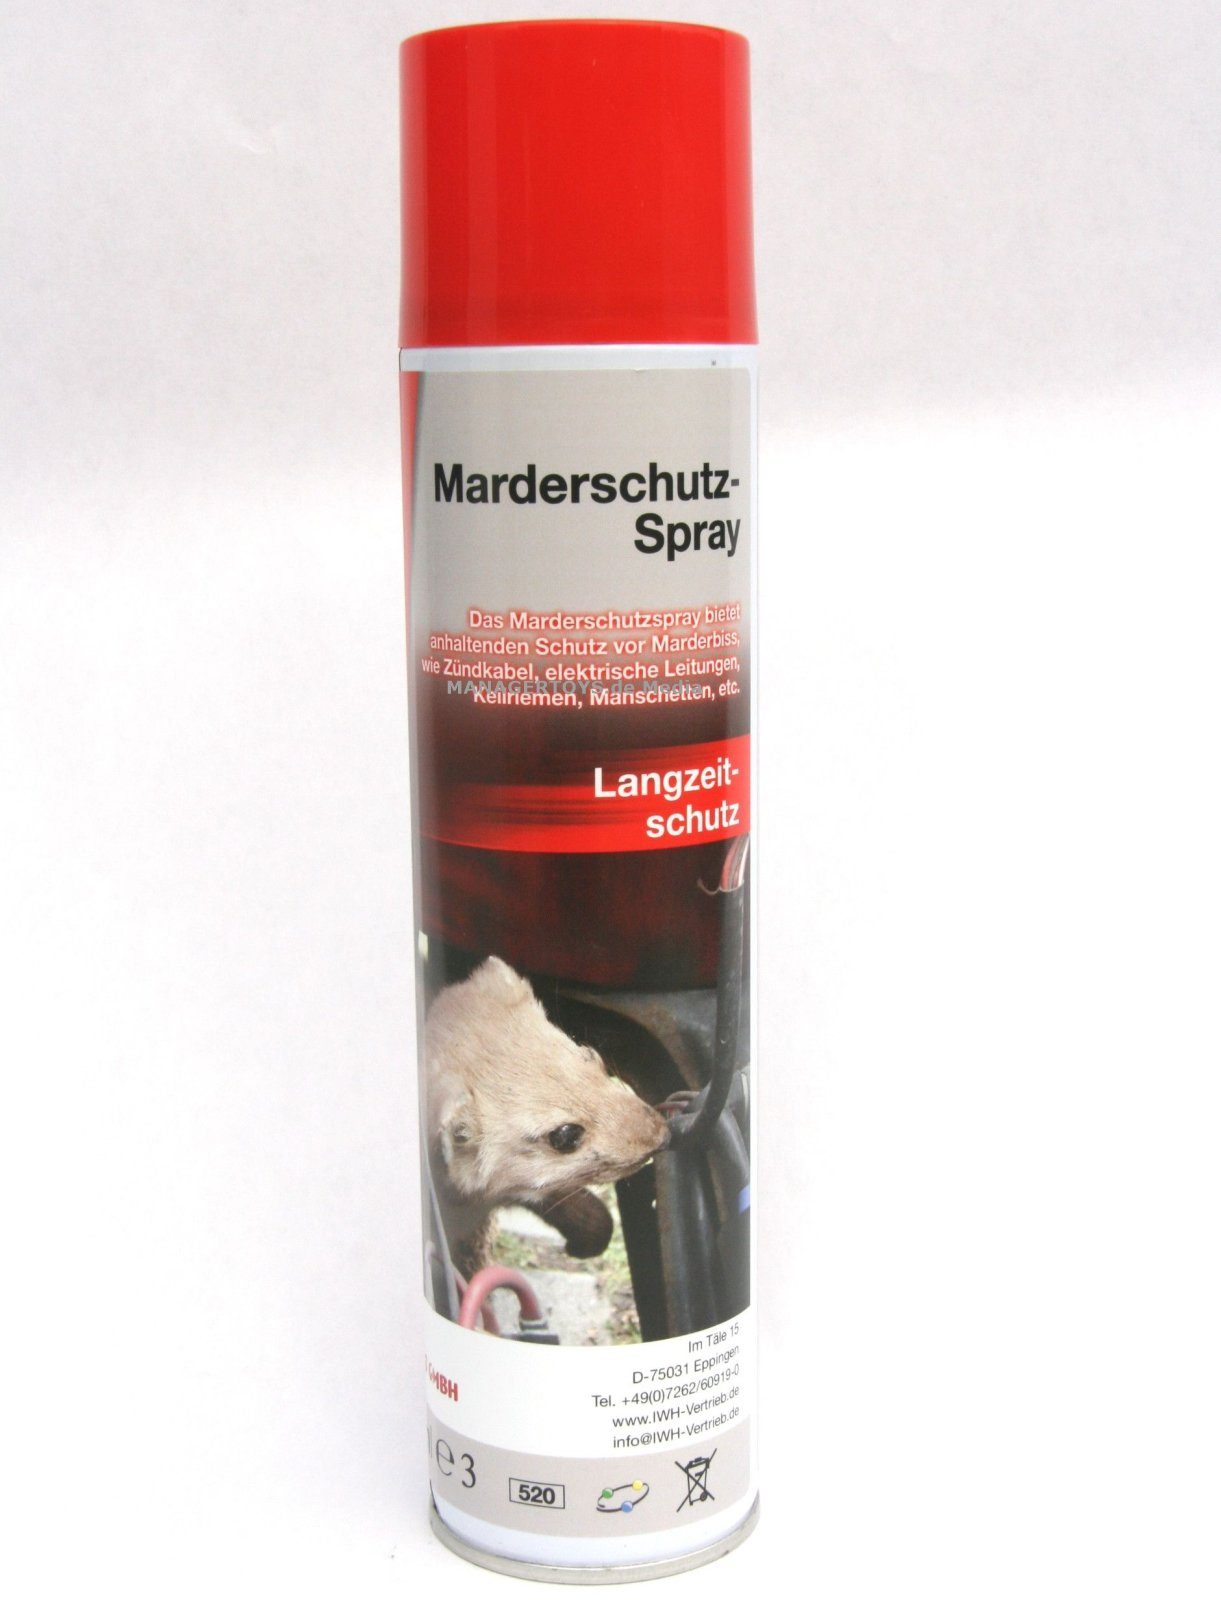 IWH Sprühflasche Anti Marder Schutz Spray 400 ml Marderschreck